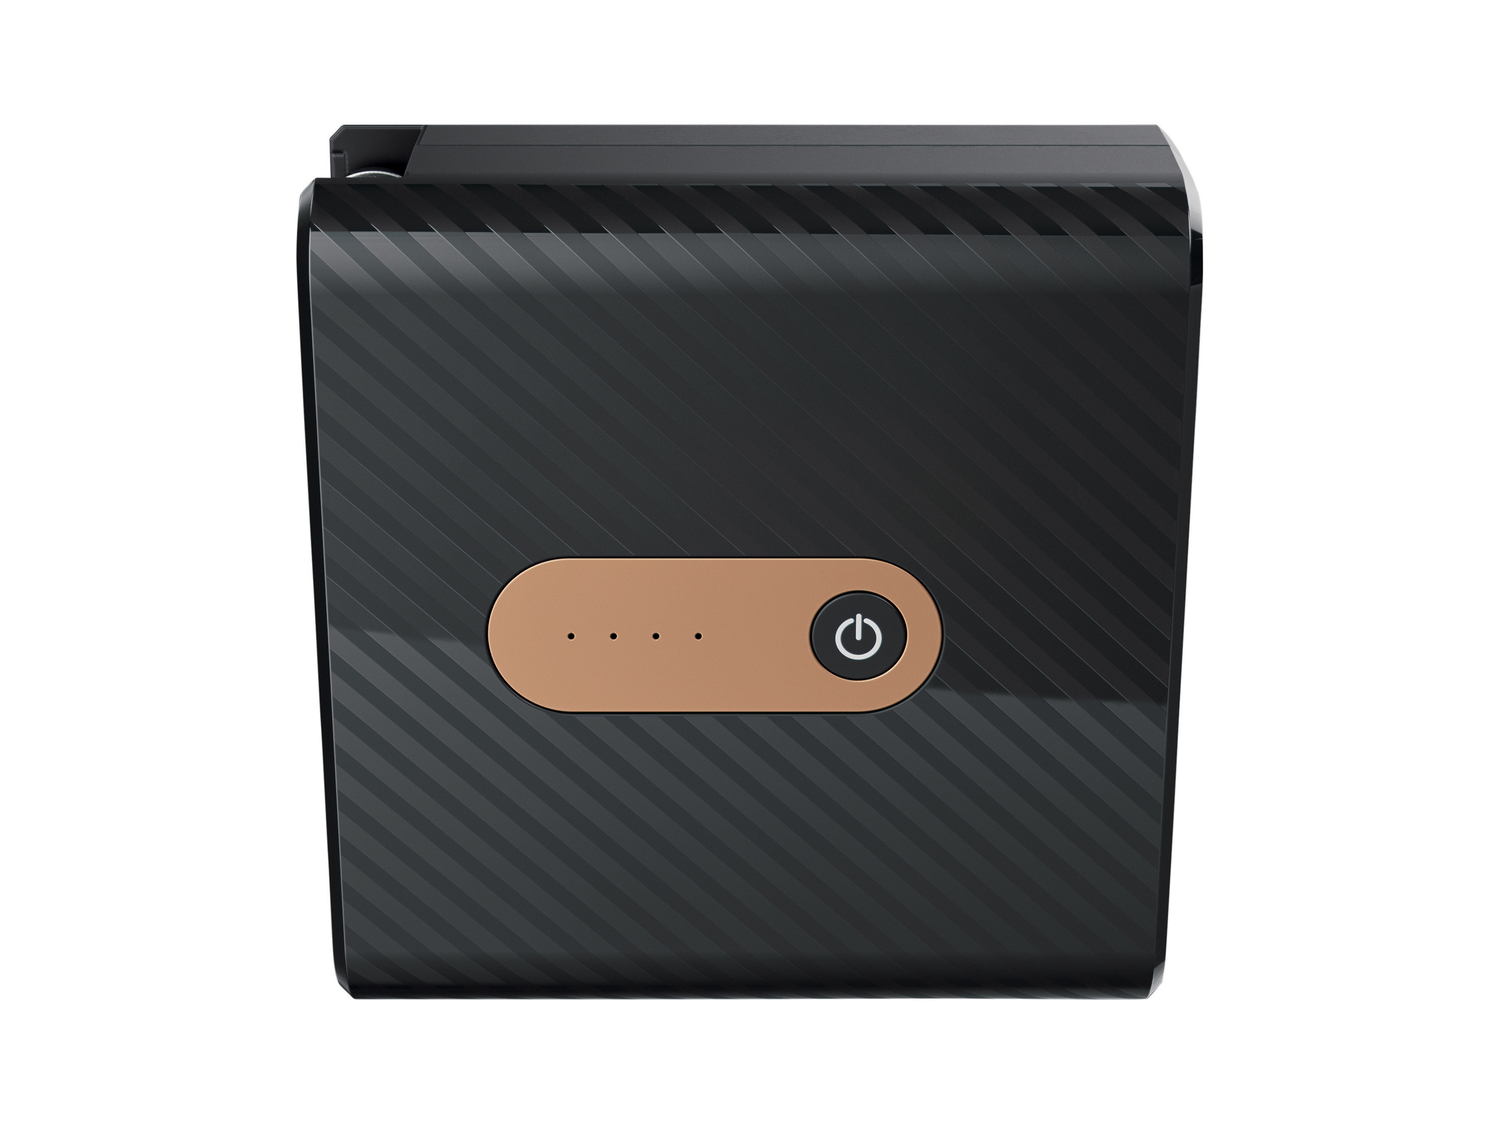 Caricabatterie da viaggio con powerbank Silvercrest SMRP 5200 A1, prezzo 17.99 € ...